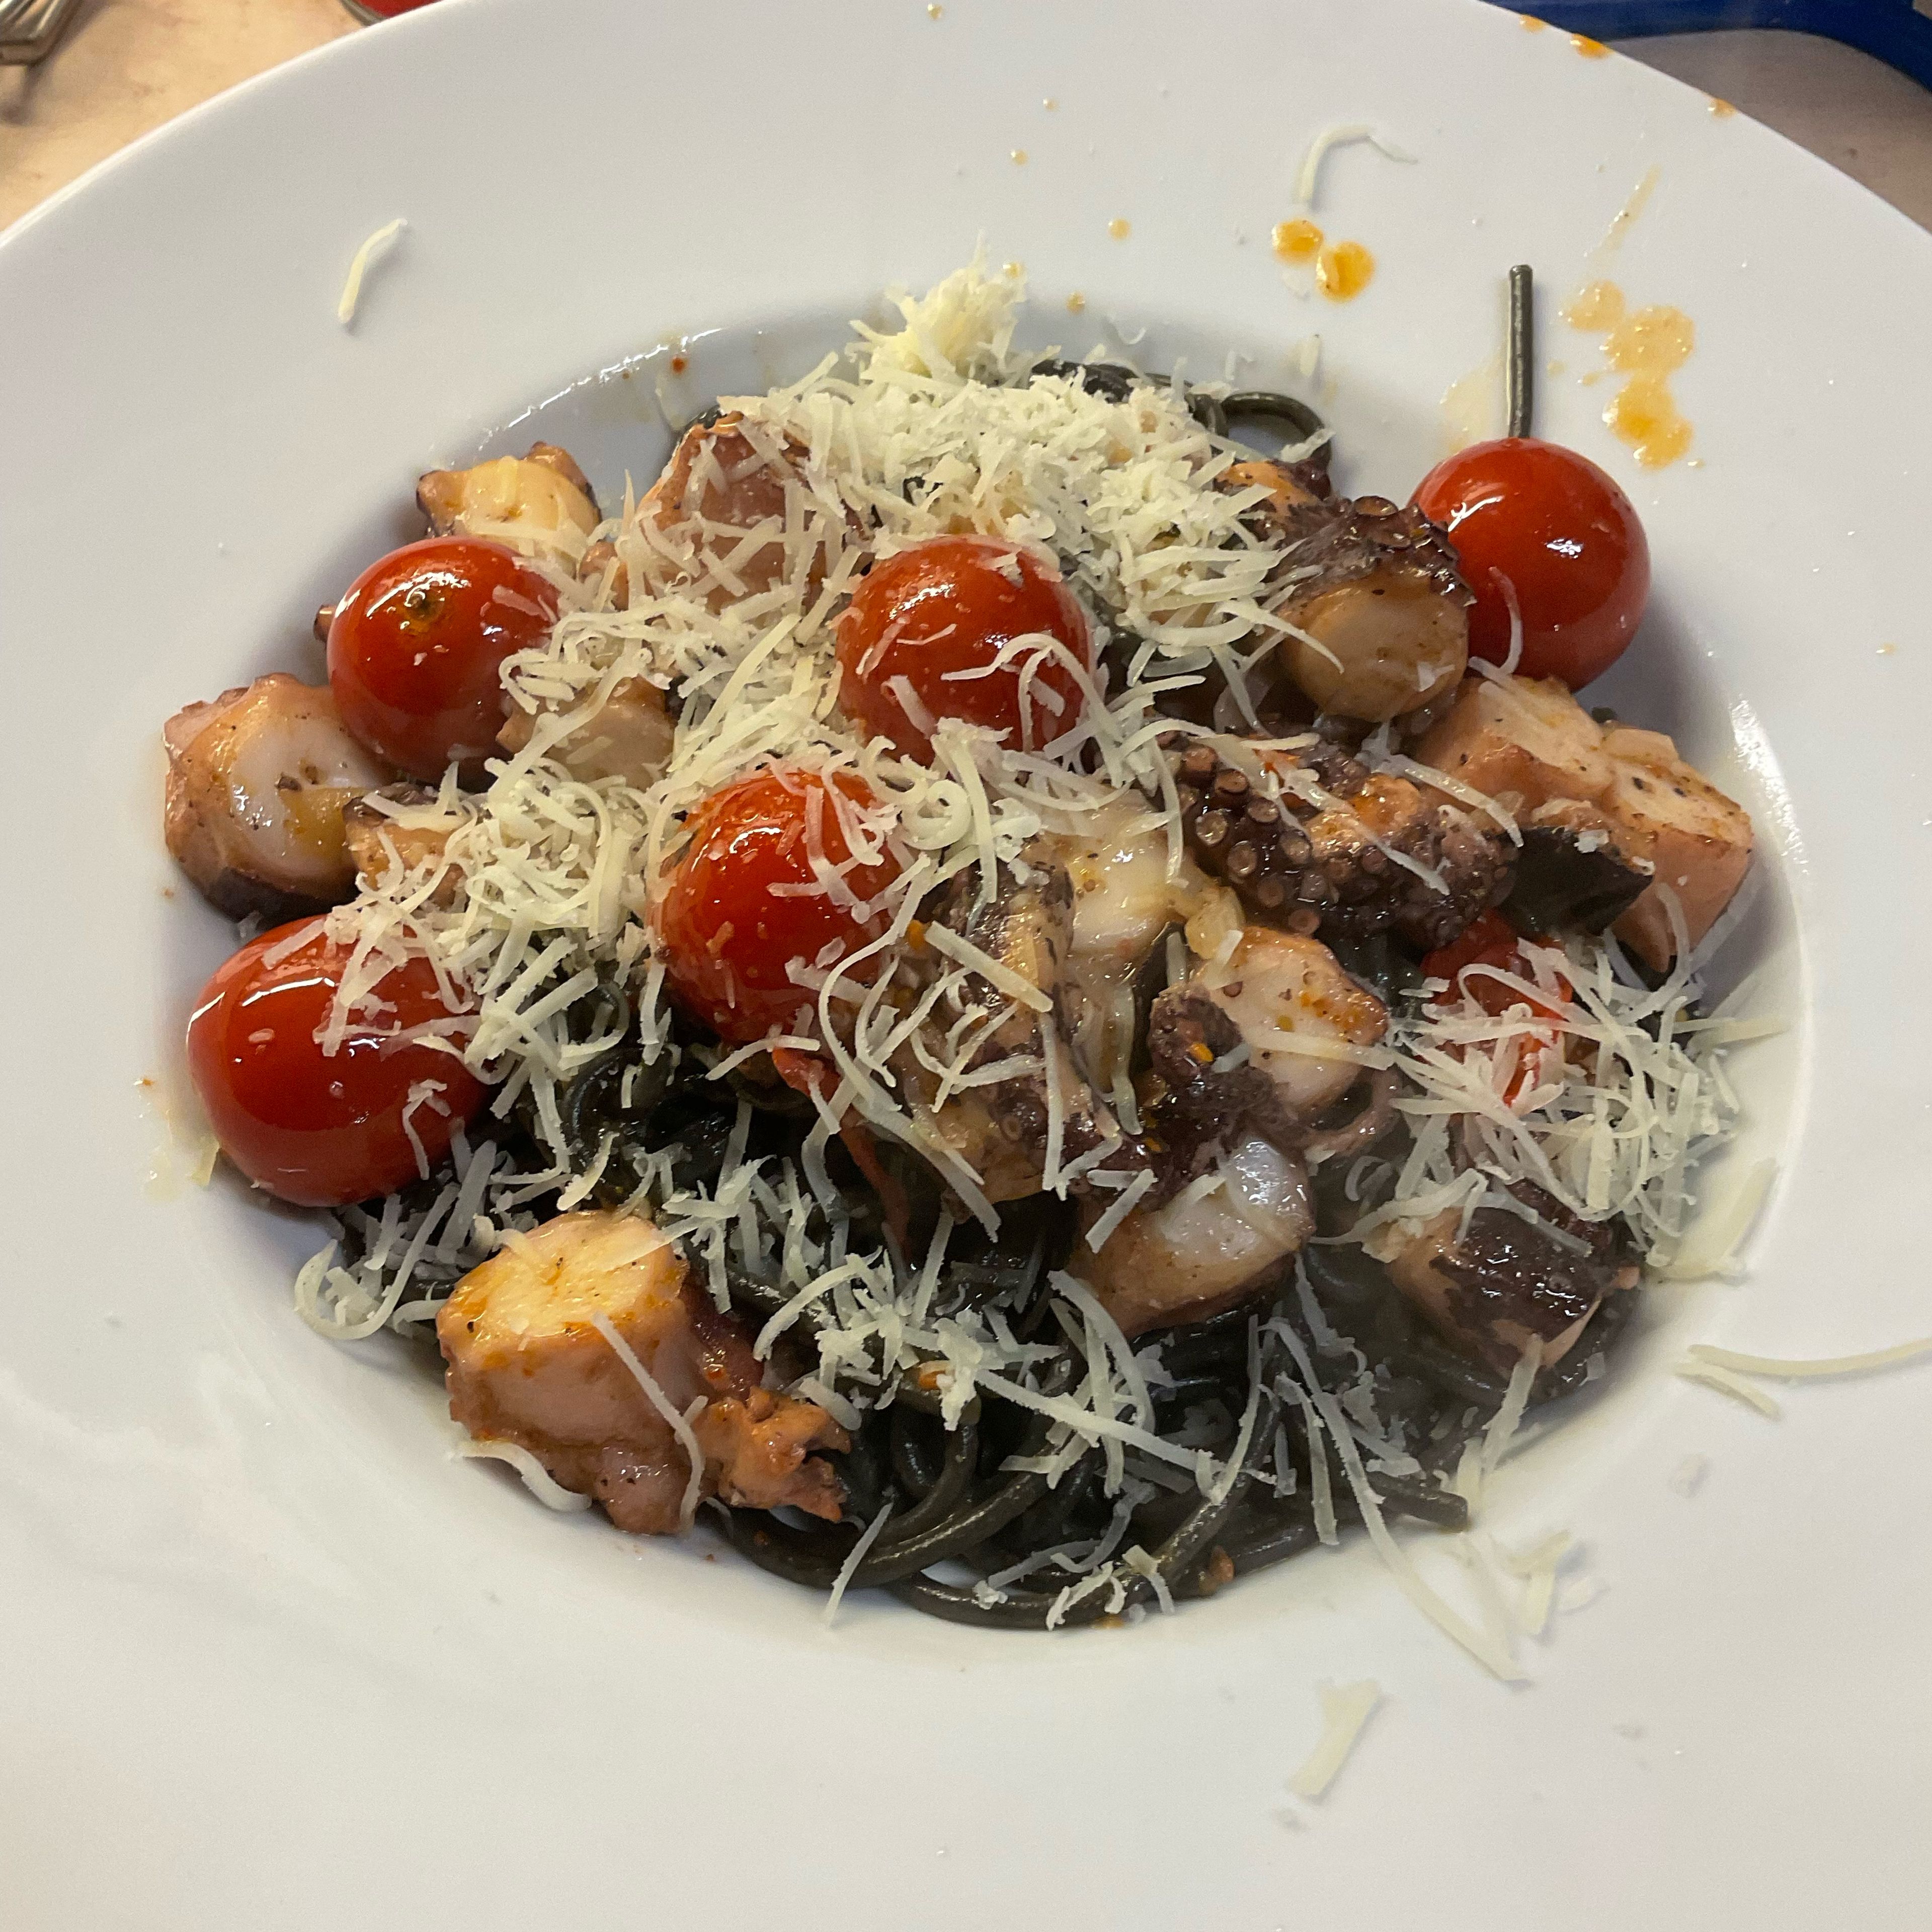 Spagetti negro mit der Spaghettikralle im tiefen Teller portionieren, die superheißen Pulpo/Kirschtomaten drüber drapieren und den Pecorino drauf streuen.